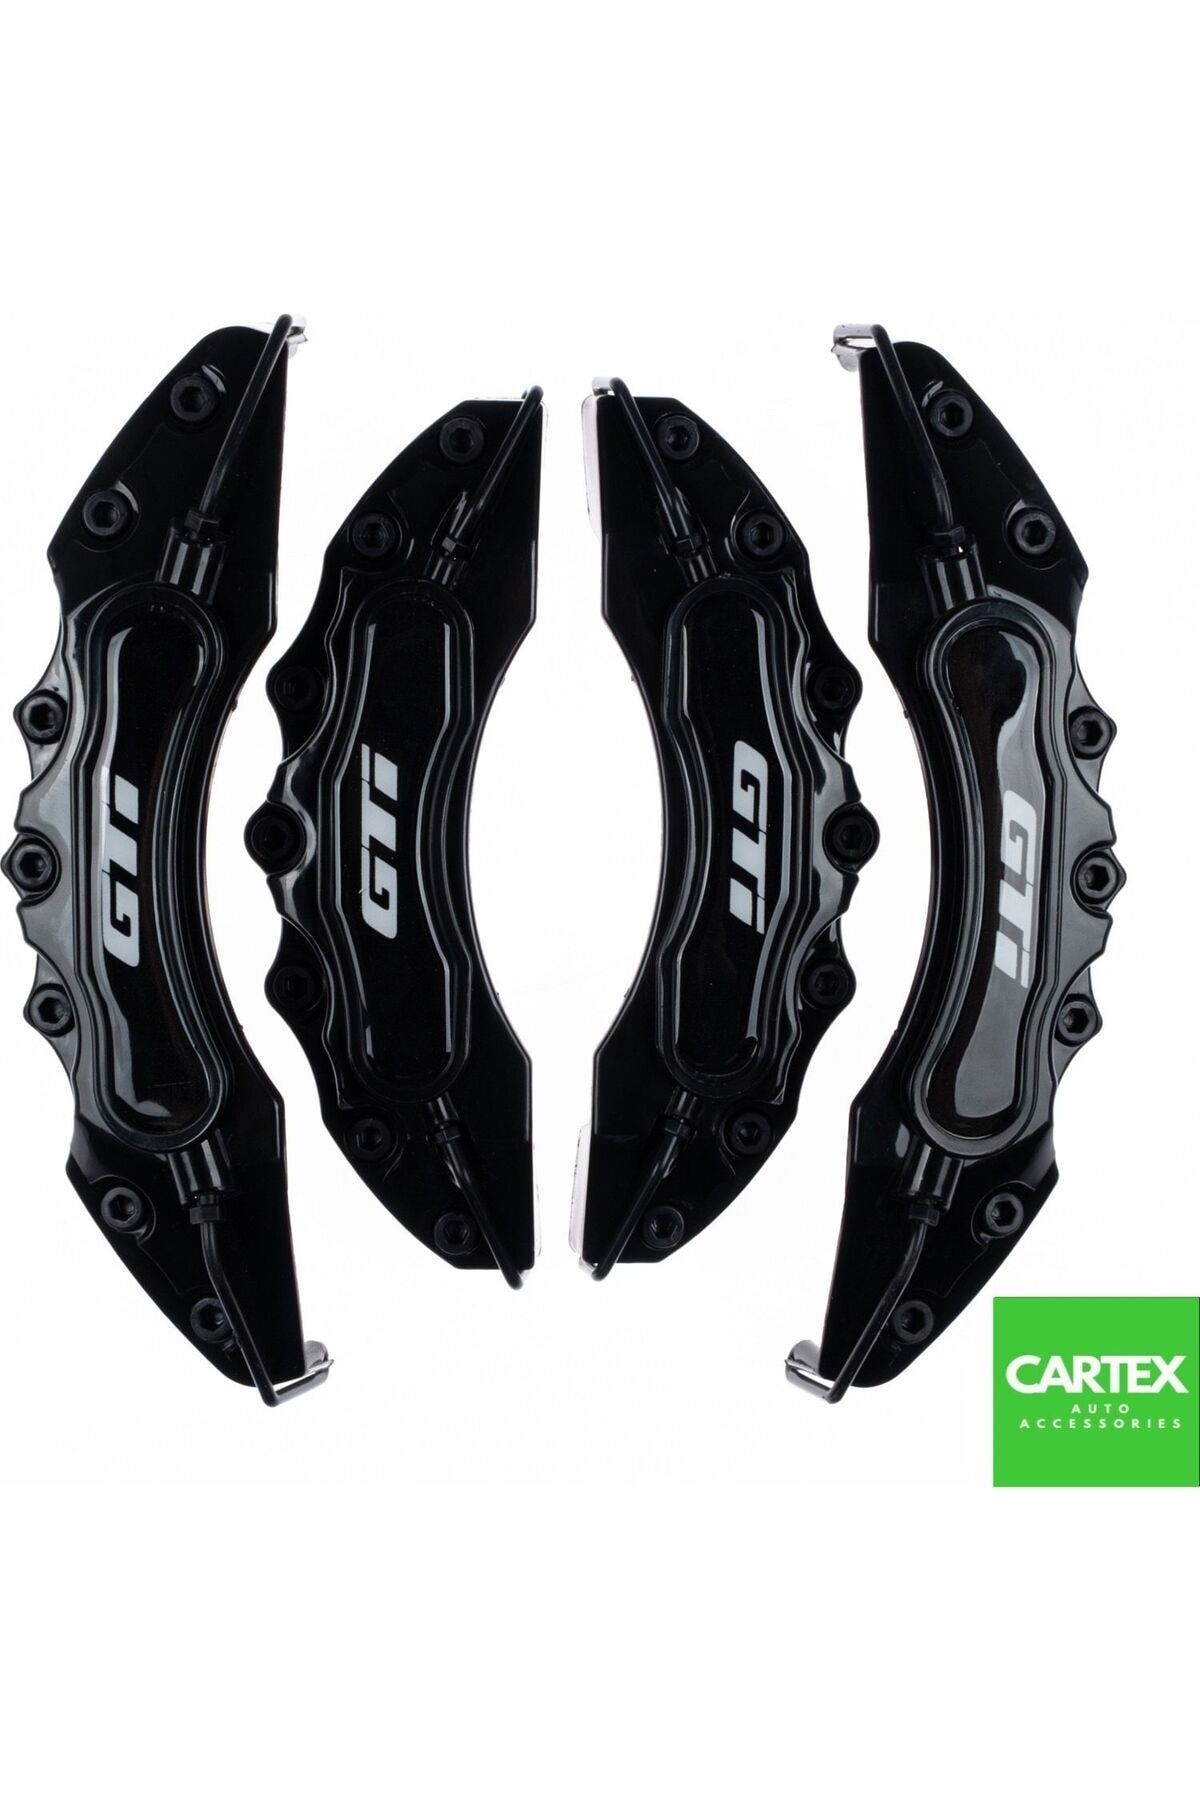 Cartex GTI Uyumlu Logolu Siyah Kaliper Kapağı 4 Parça